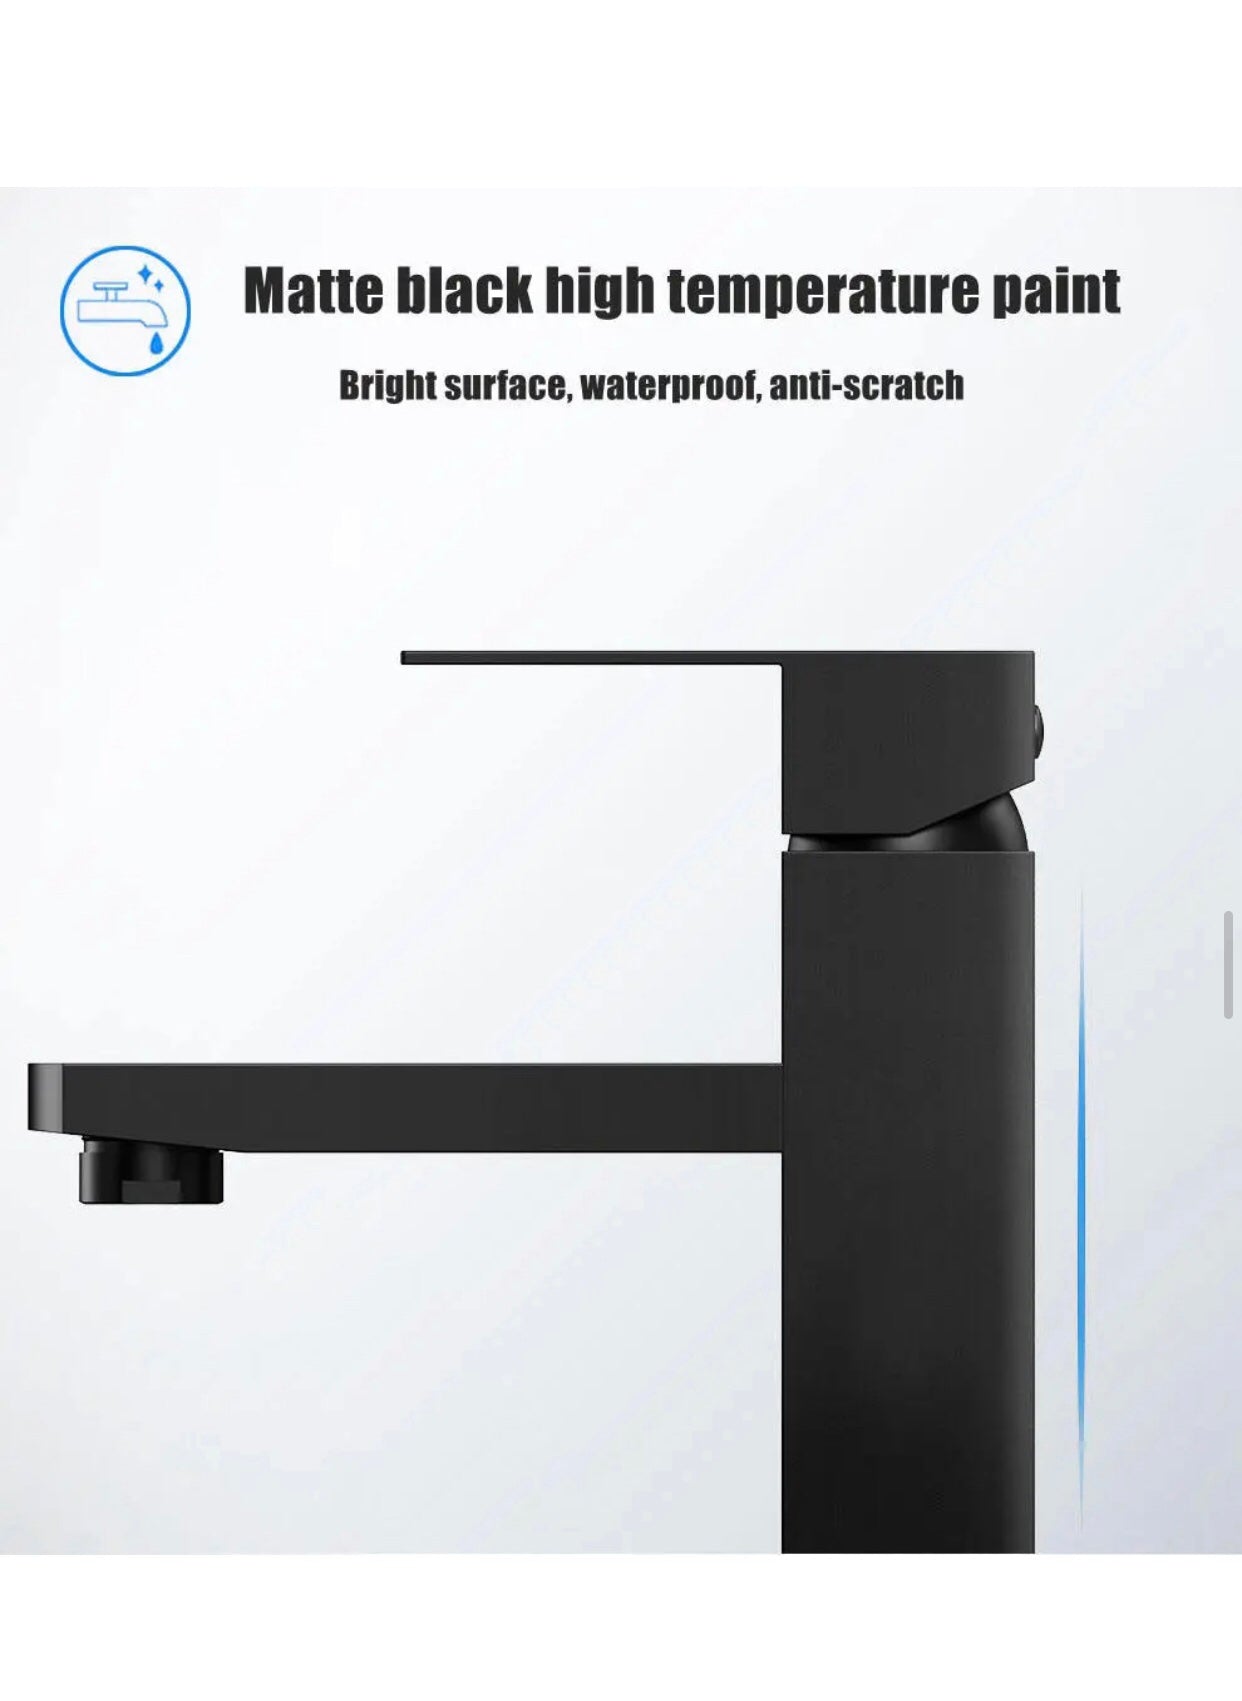 A|M Aquae Tormili Brass Taps Basin Mixer Single Handle Water Mixer Bathroom Faucet Set